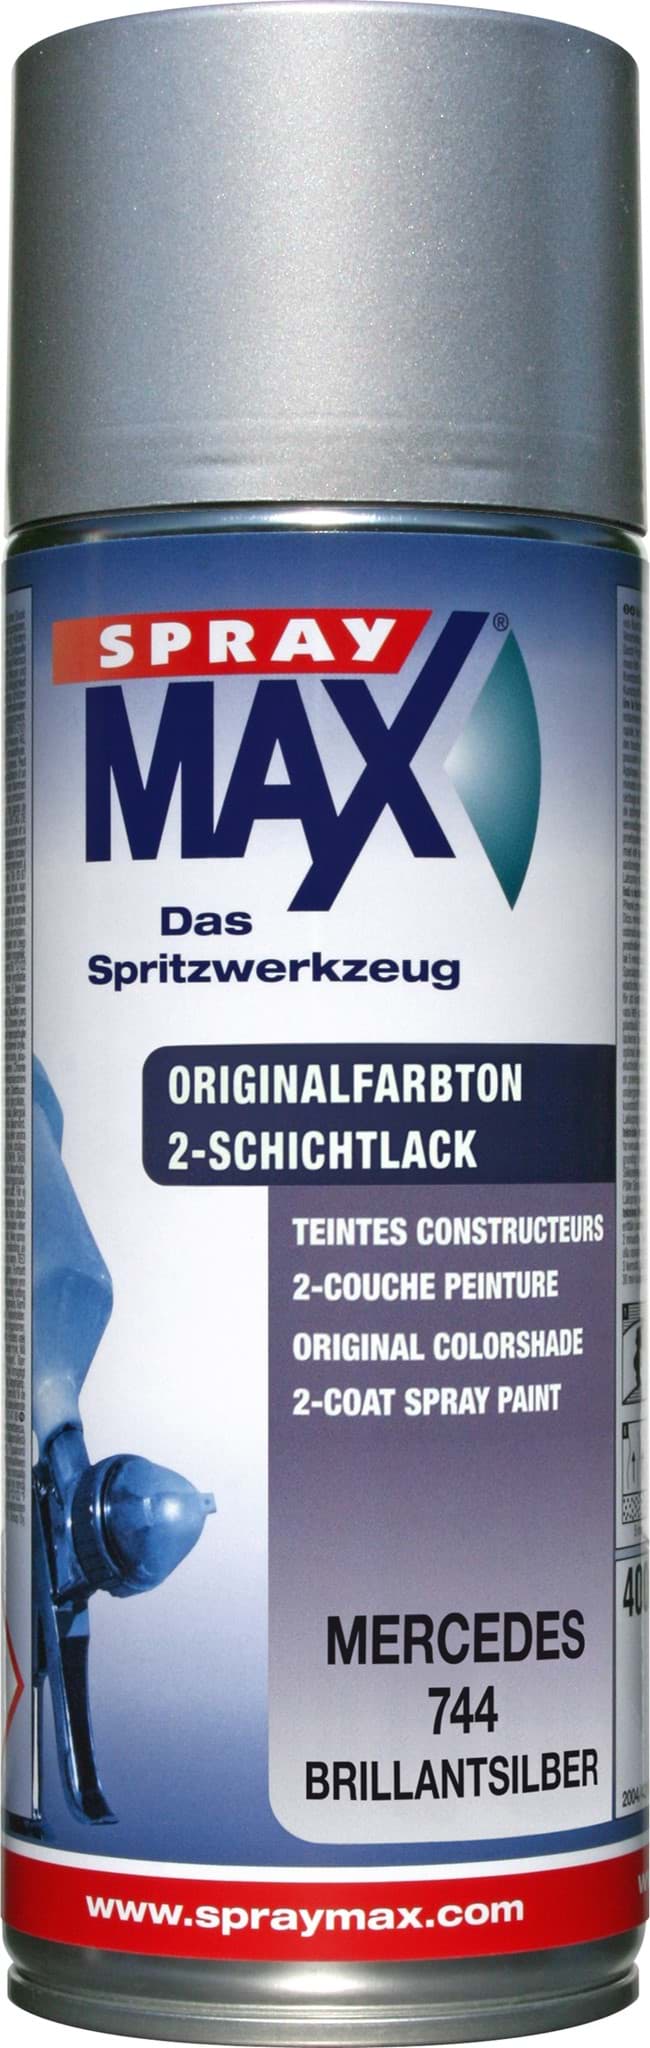 Afbeelding van SprayMax Originalfarbton für Mercedes 744 brillantsilber